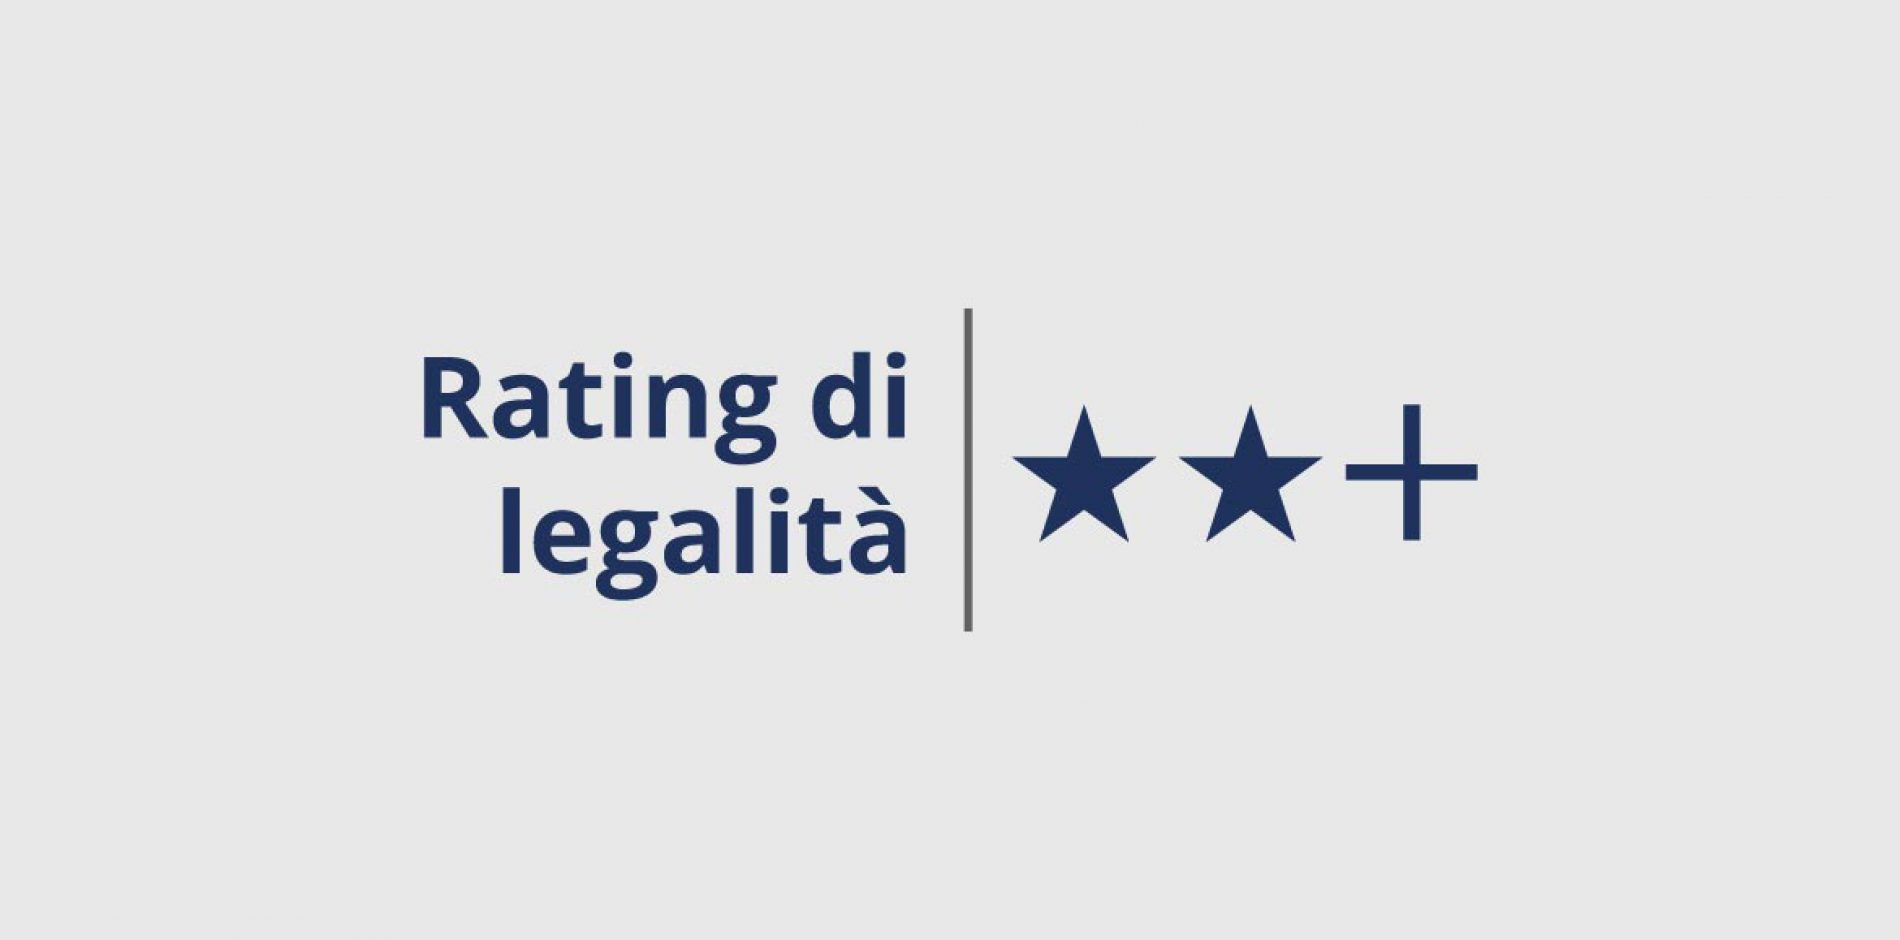 Rating di Legalità: Generazione Vincente S.p.A. si aggiudica la seconda “stella +”